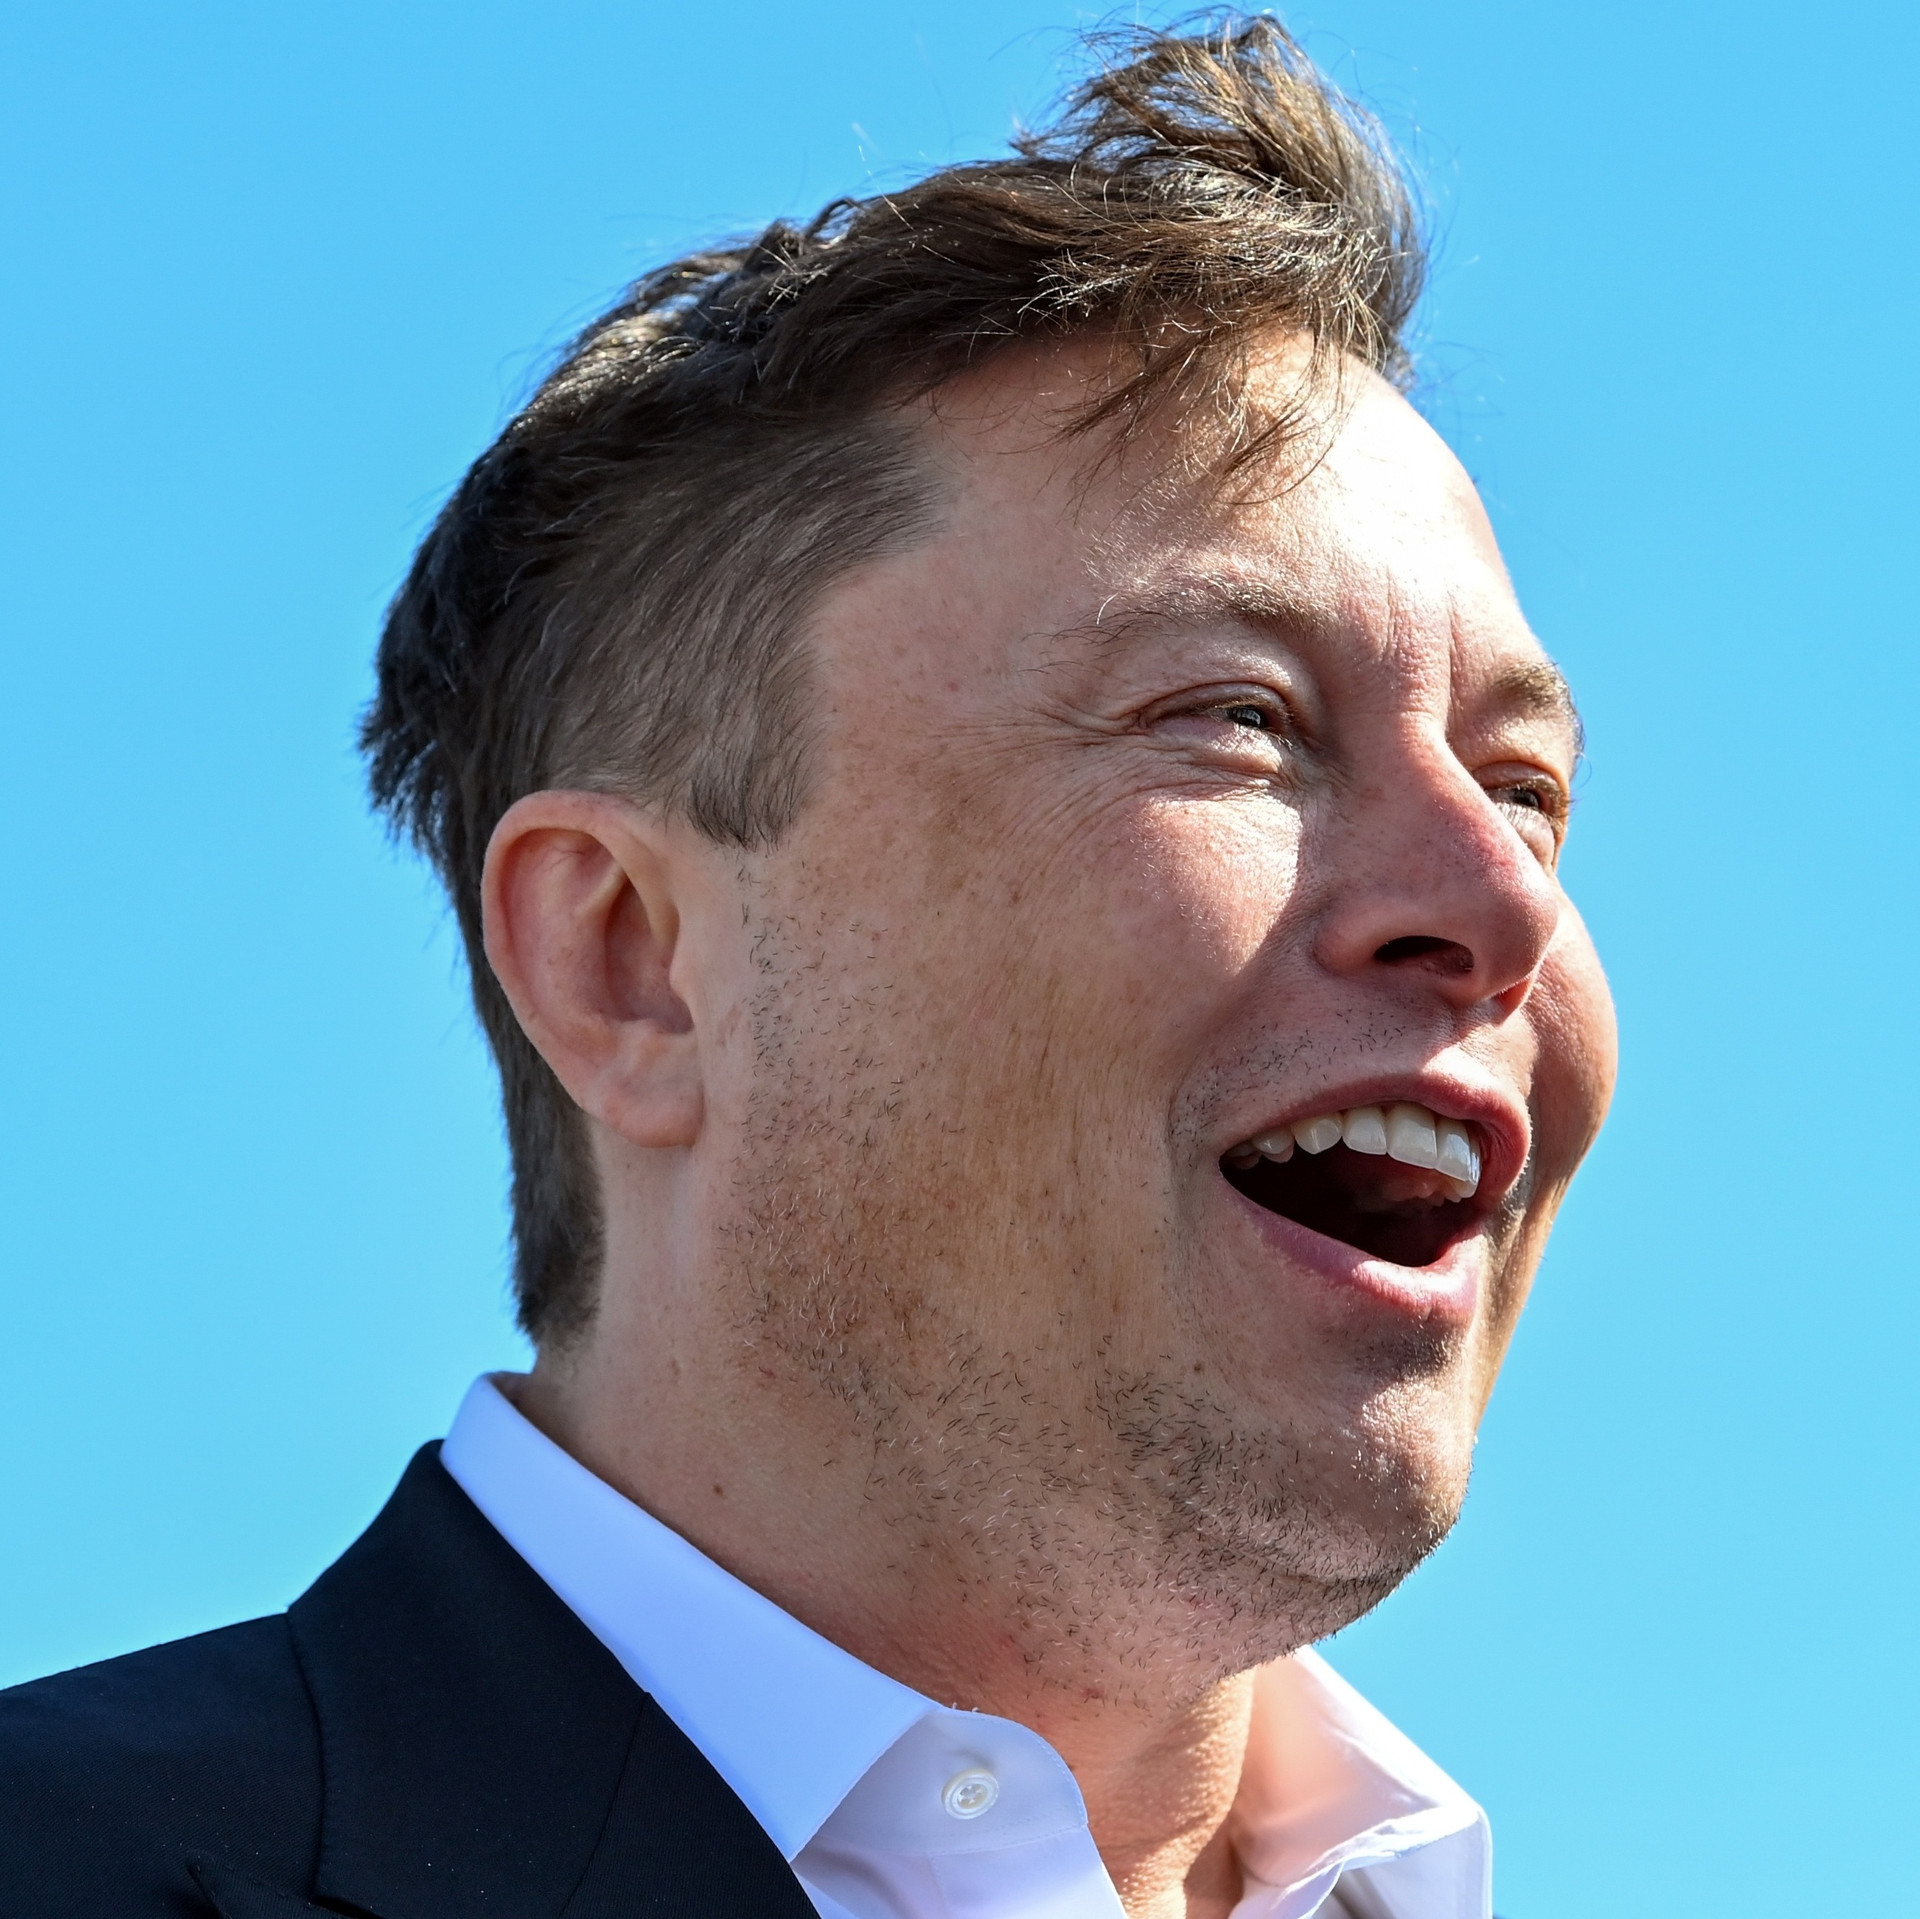 Trải nghiệm đáng sợ khi gặp Elon Musk: Chờ hơn 1 giờ đồng hồ, không được phép mở lời trước khi Musk nói - Ảnh 3.